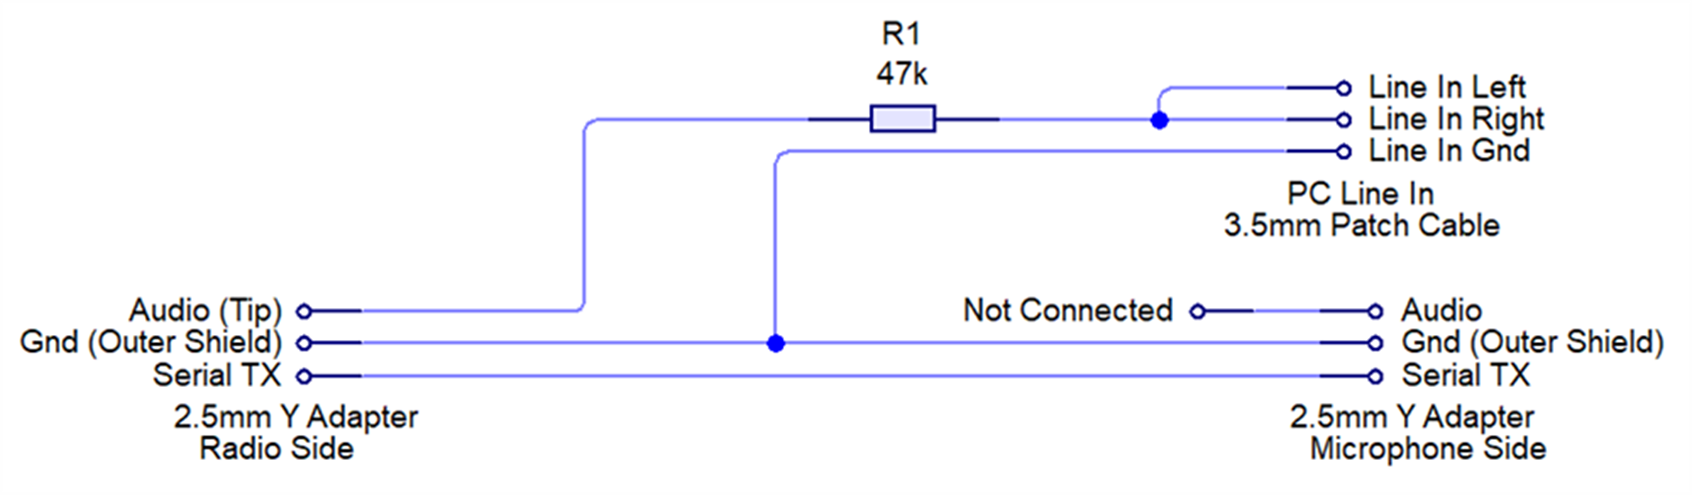 Принципиальная схема самодельного кабеля (источник изображения)